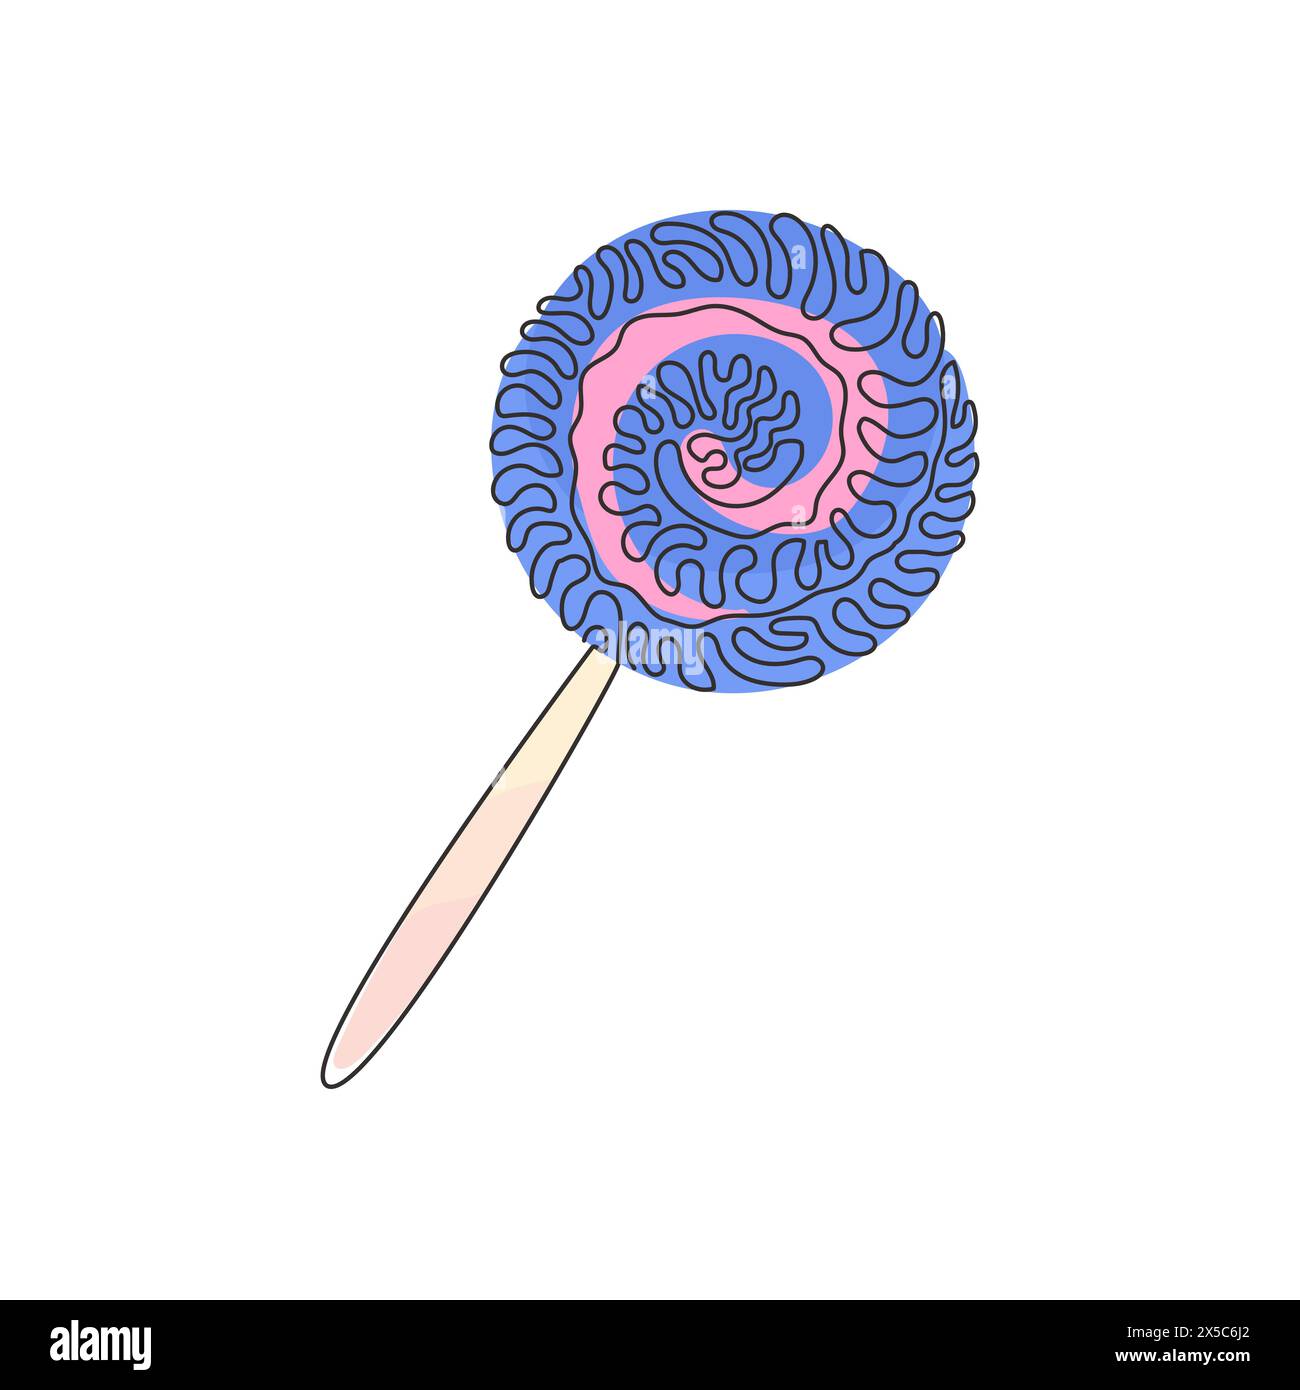 Einzelne durchgehende Linienzeichnung wirbelt Lollipops. Farbige Zuckerbonbons zum Nachtisch. Süße Süßigkeiten am Stock mit verdrehtem Design. Wirbelnde Lockenform. Dynamisch Stock Vektor